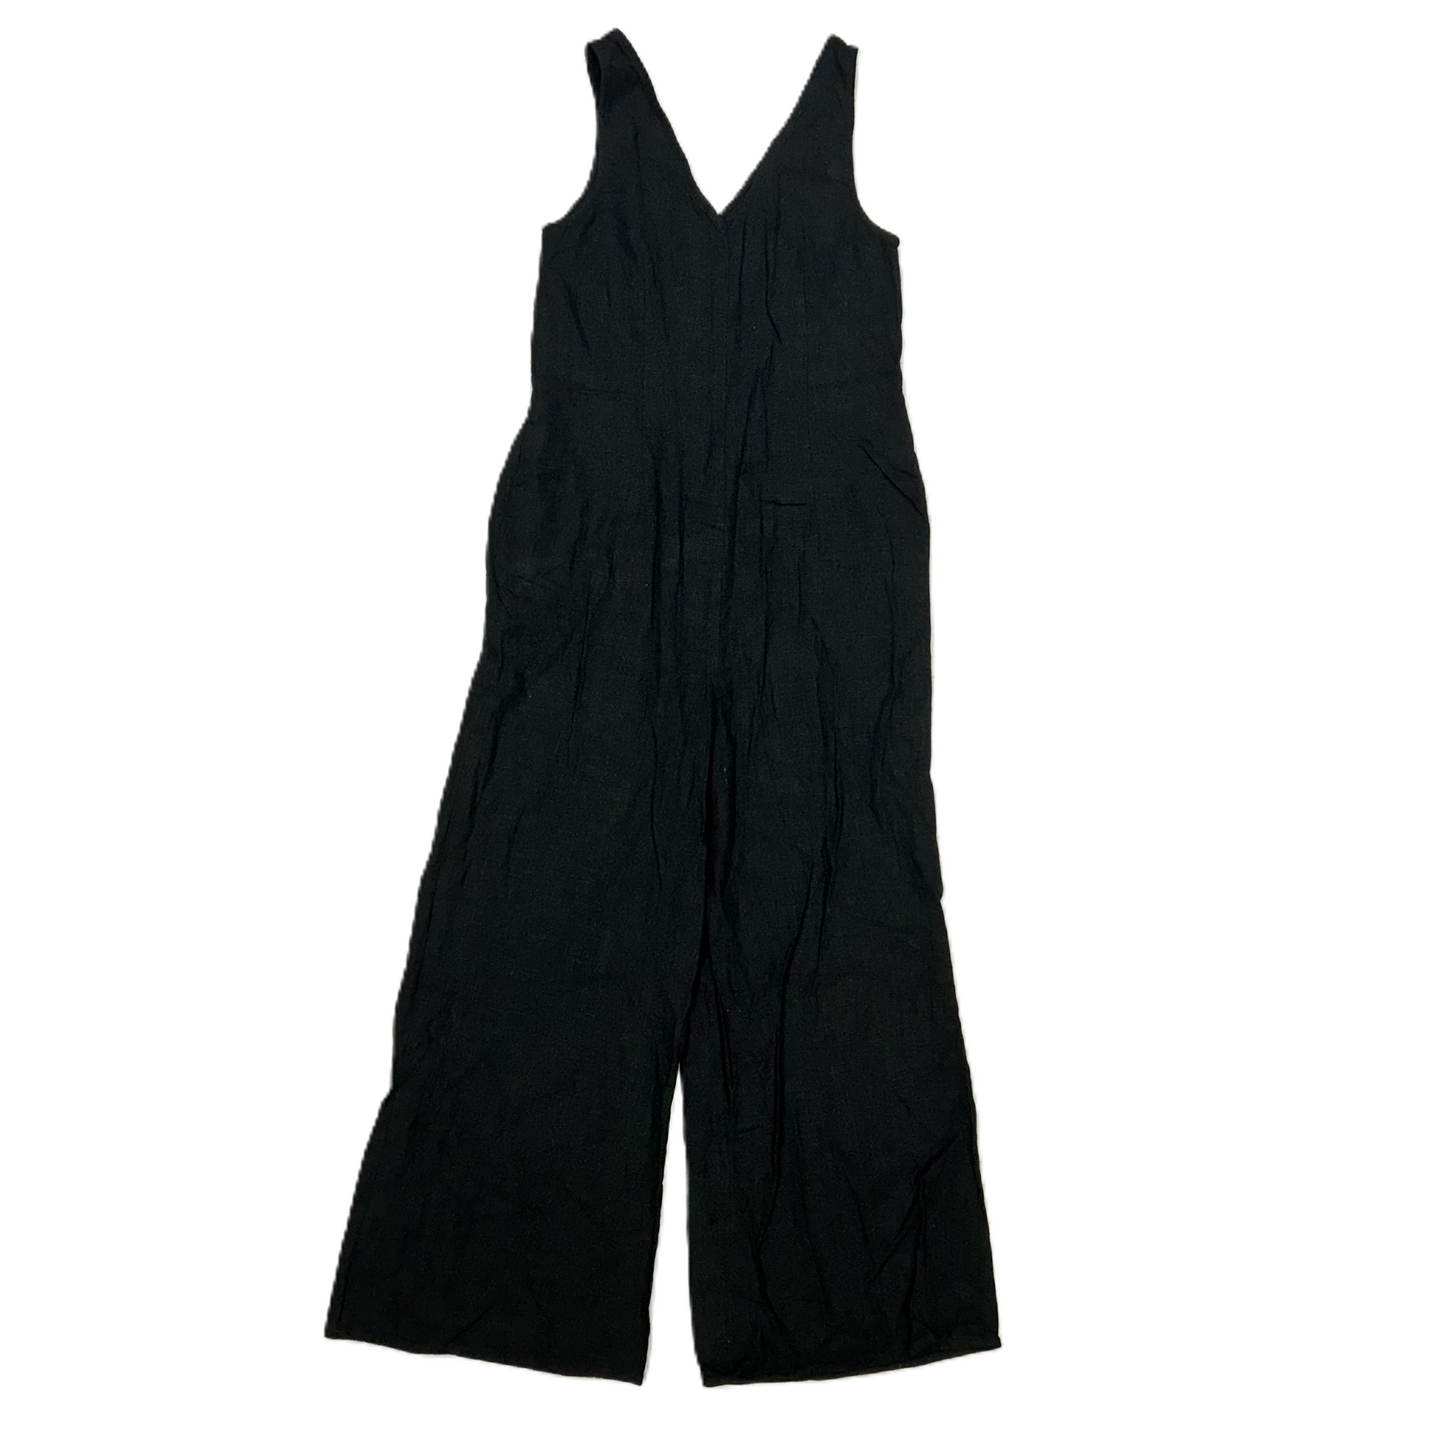 Black Jumpsuit By Modcloth, Size: Xxs